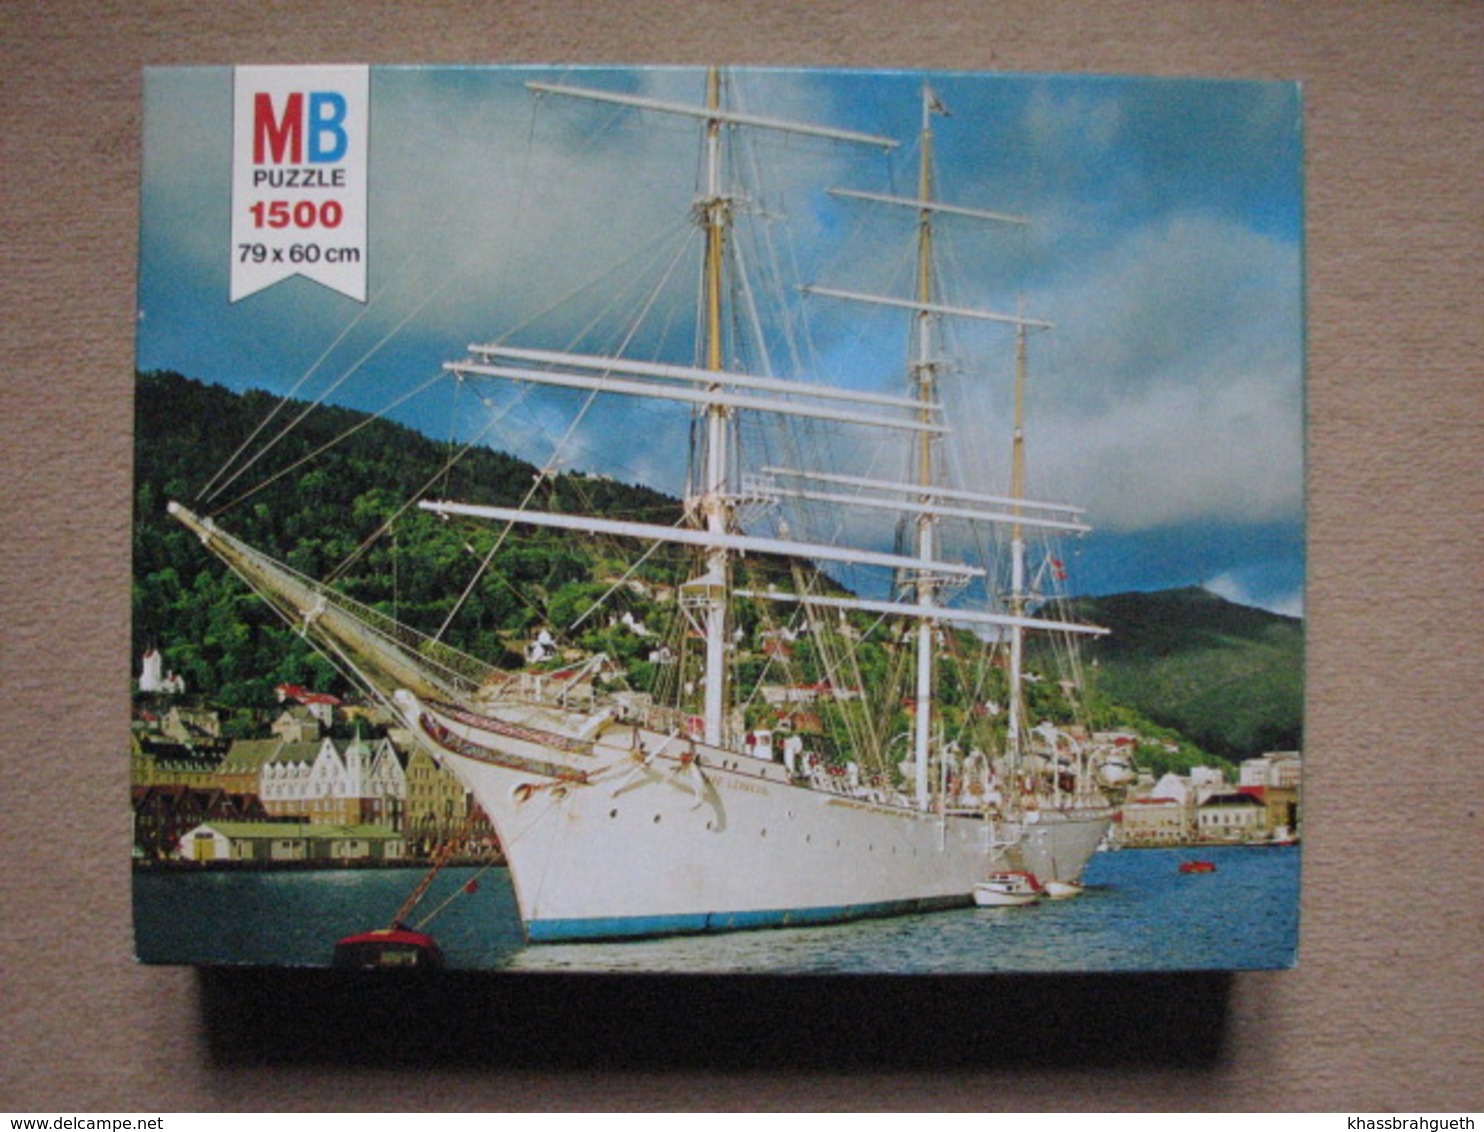 PUZZLE MB / SERIE YORK (1500 P) - BATEAU NORVEGIEN / NORVEGIAN SHIP - Puzzles